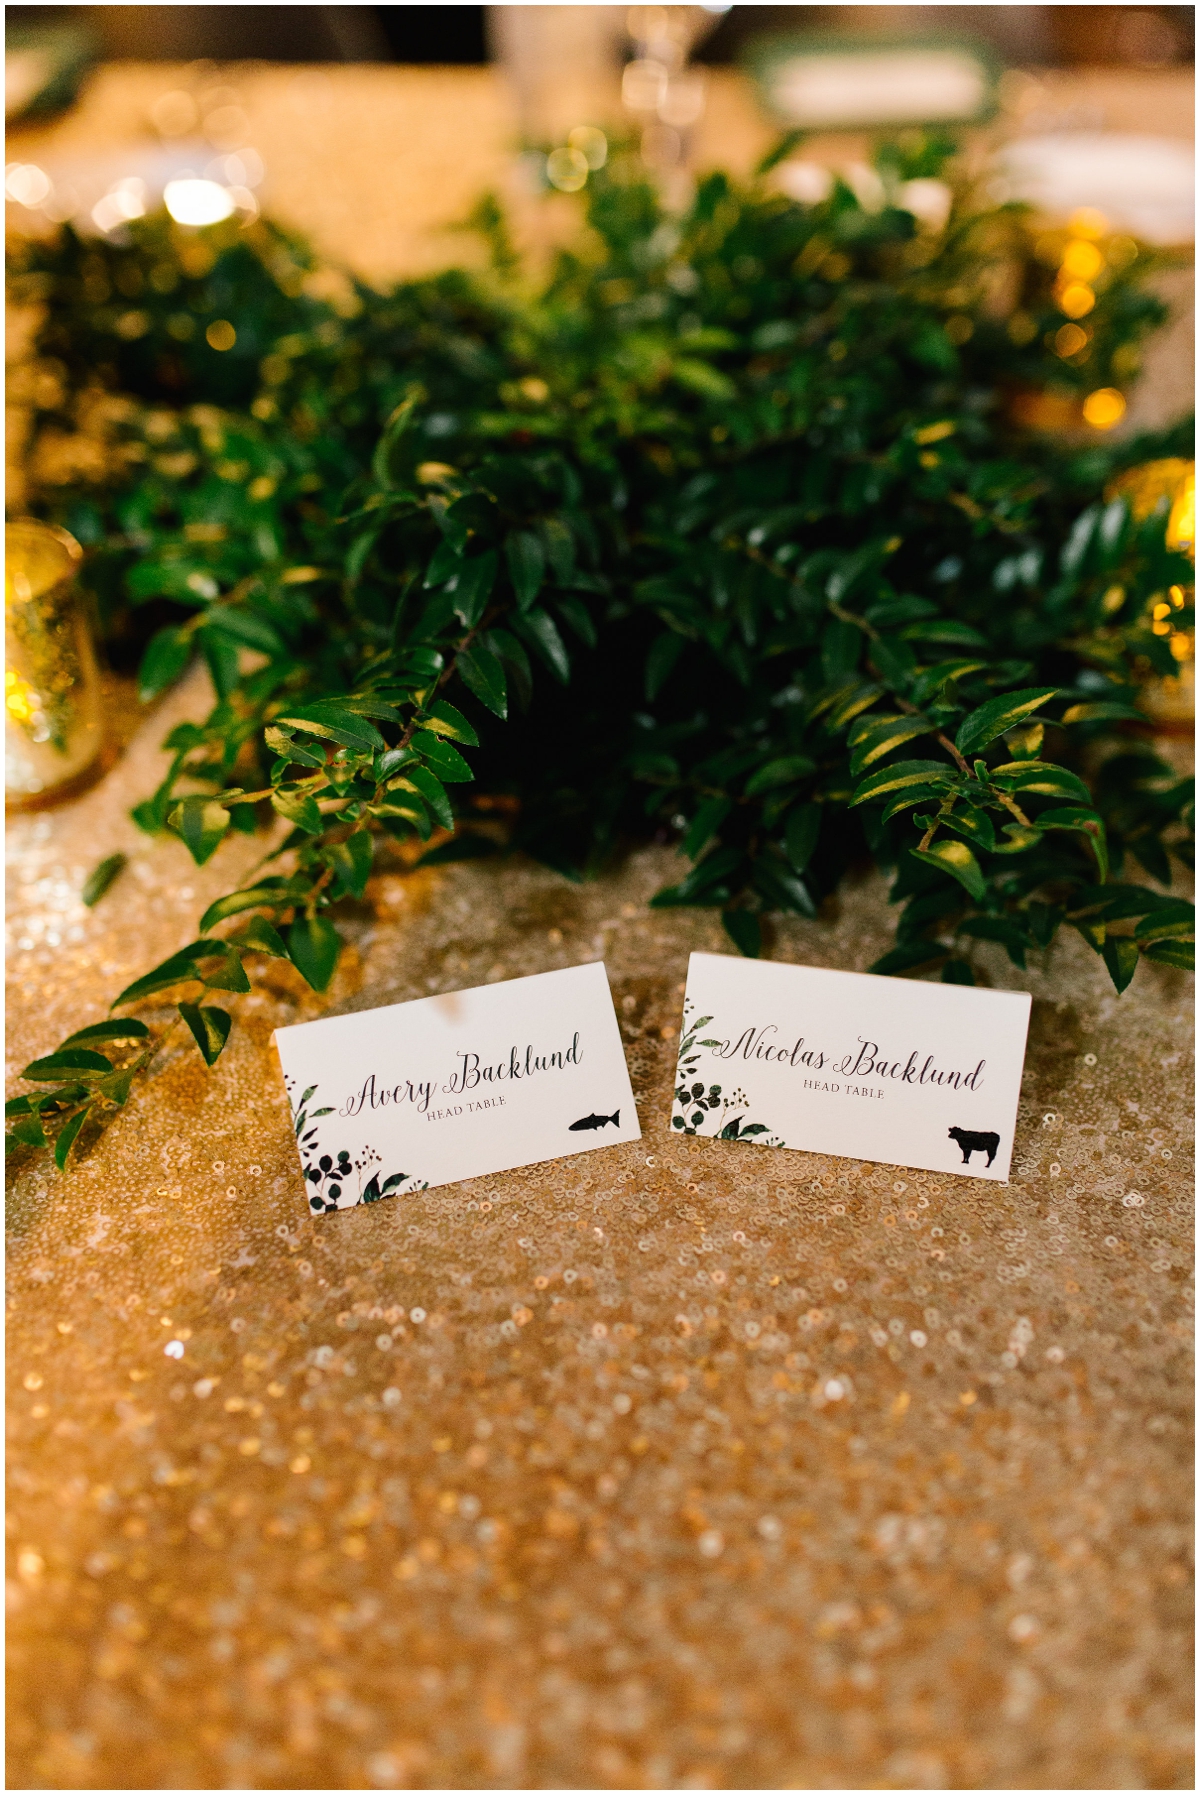  Wedding name tags 